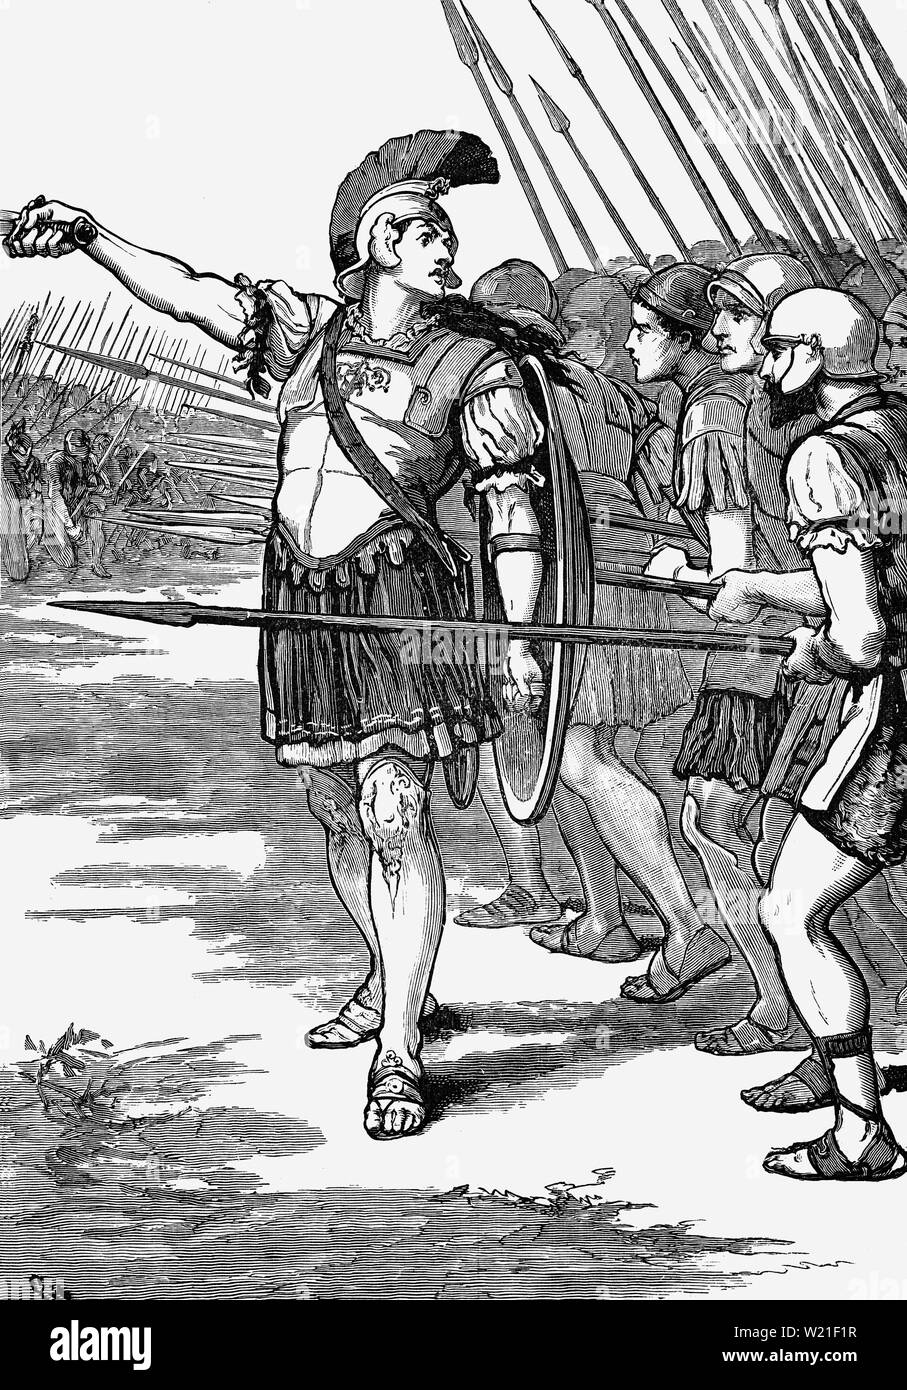 Pelopidas, statista e generale in Grecia, portando l'esercito tebana alla battaglia di Leuctra il 6 luglio 371 a.e.v.. Il conflitto tra il led Boeotians dal Thebans, e gli spartani lungo con i loro alleati hanno avuto luogo durante il post-guerra corinzio conflitto. La battaglia ebbe luogo nearf Leuctra, un villaggio in Beozia nel territorio di Thespiae. La vittoria tebana shattered Sparta immensa influenza sulla penisola greca che Sparta aveva guadagnato dopo la sua vittoria nella guerra del Peloponneso. Foto Stock